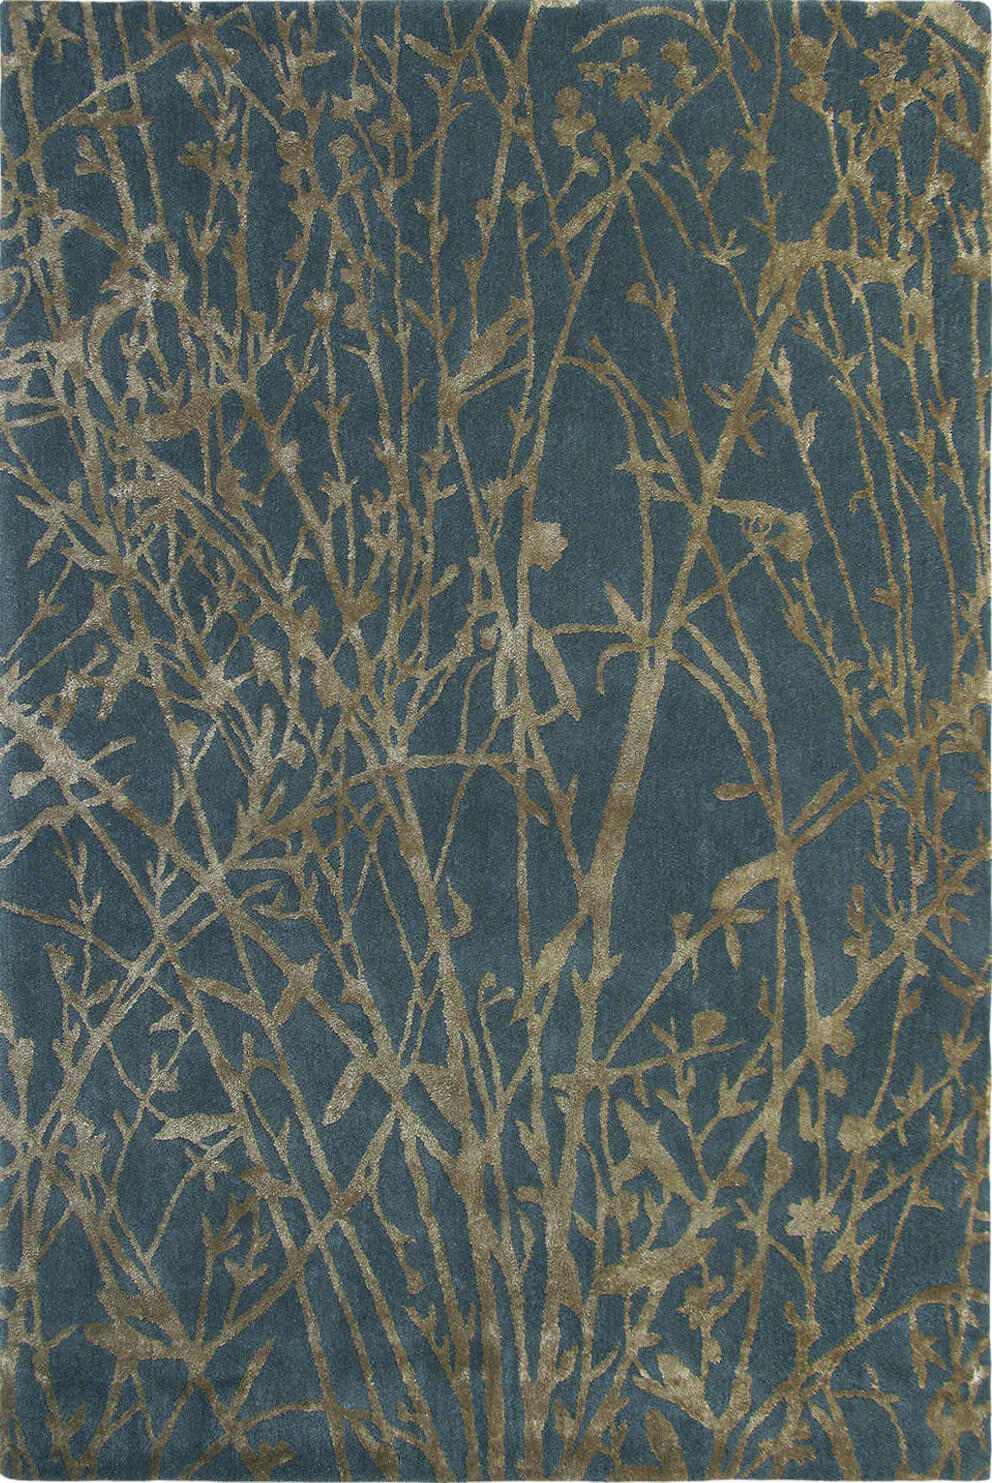 Meadow Burnish 46805 Rug by Brink & Campman ☞ Size: 140 x 200 cm